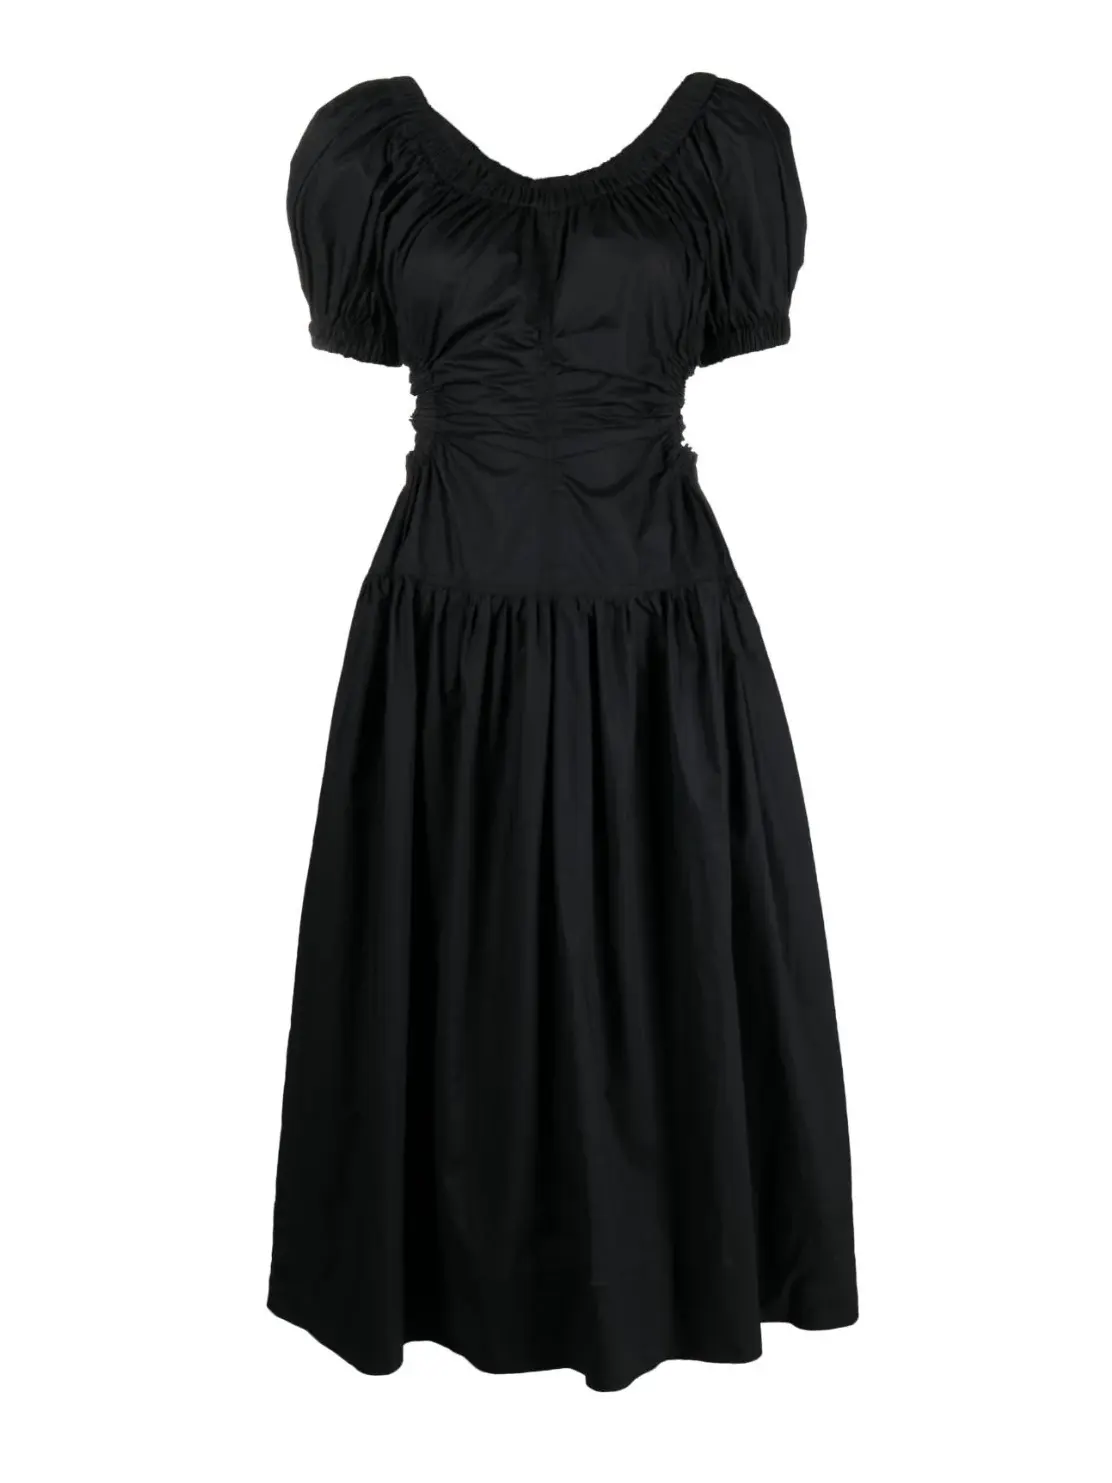 ULLA JOHNSON: Golda Dress, black